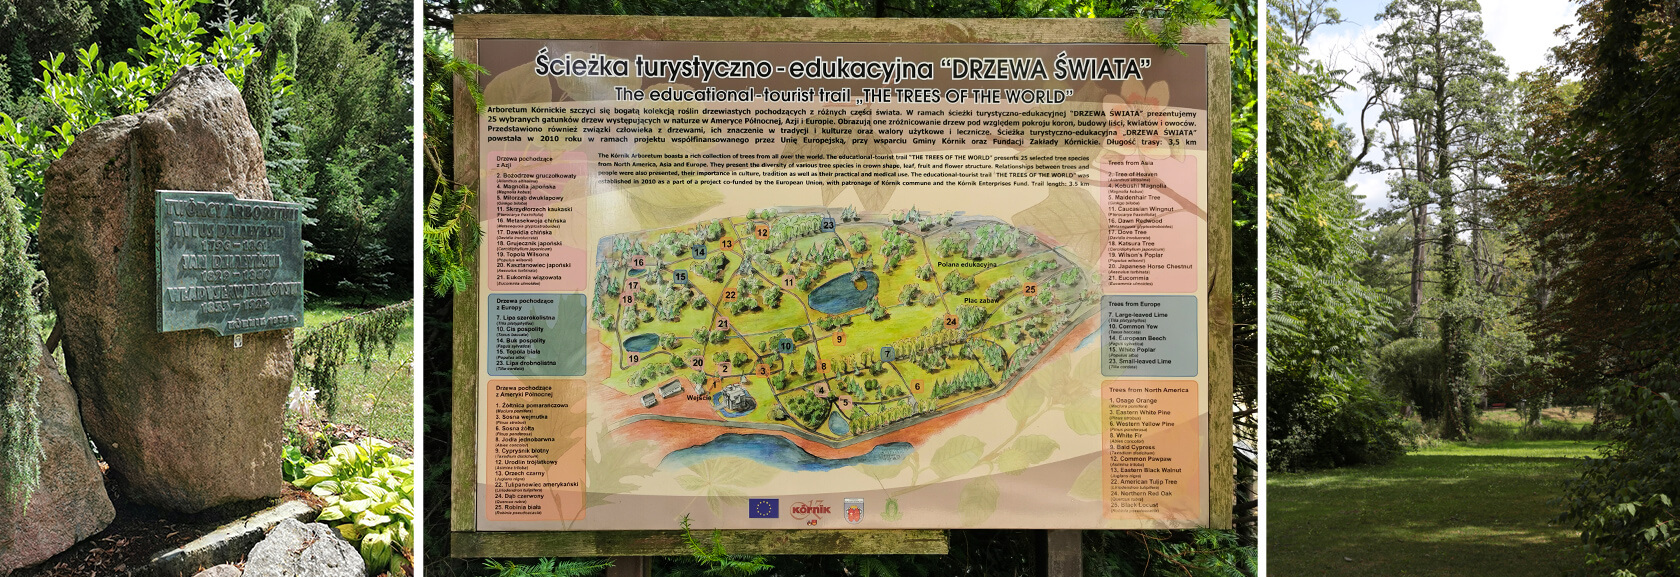 Arboretum Kórnickie